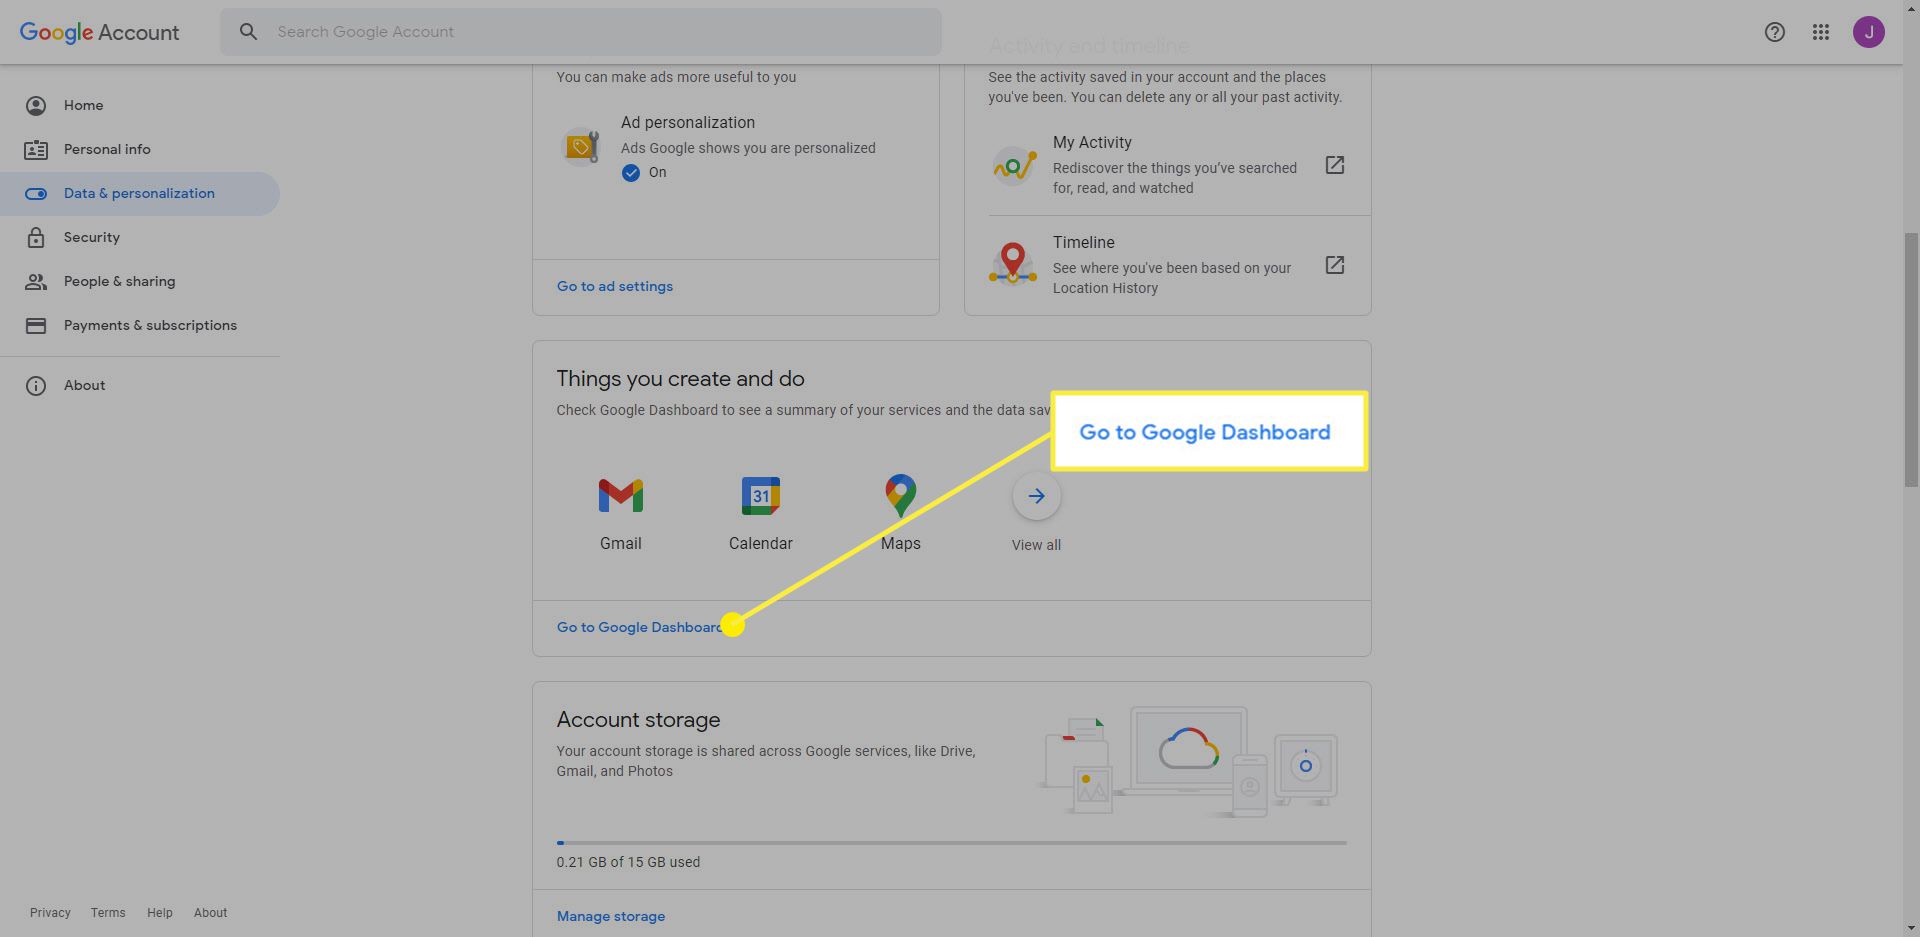 Google-konto med länken "Gå till Google Dashboard" markerad